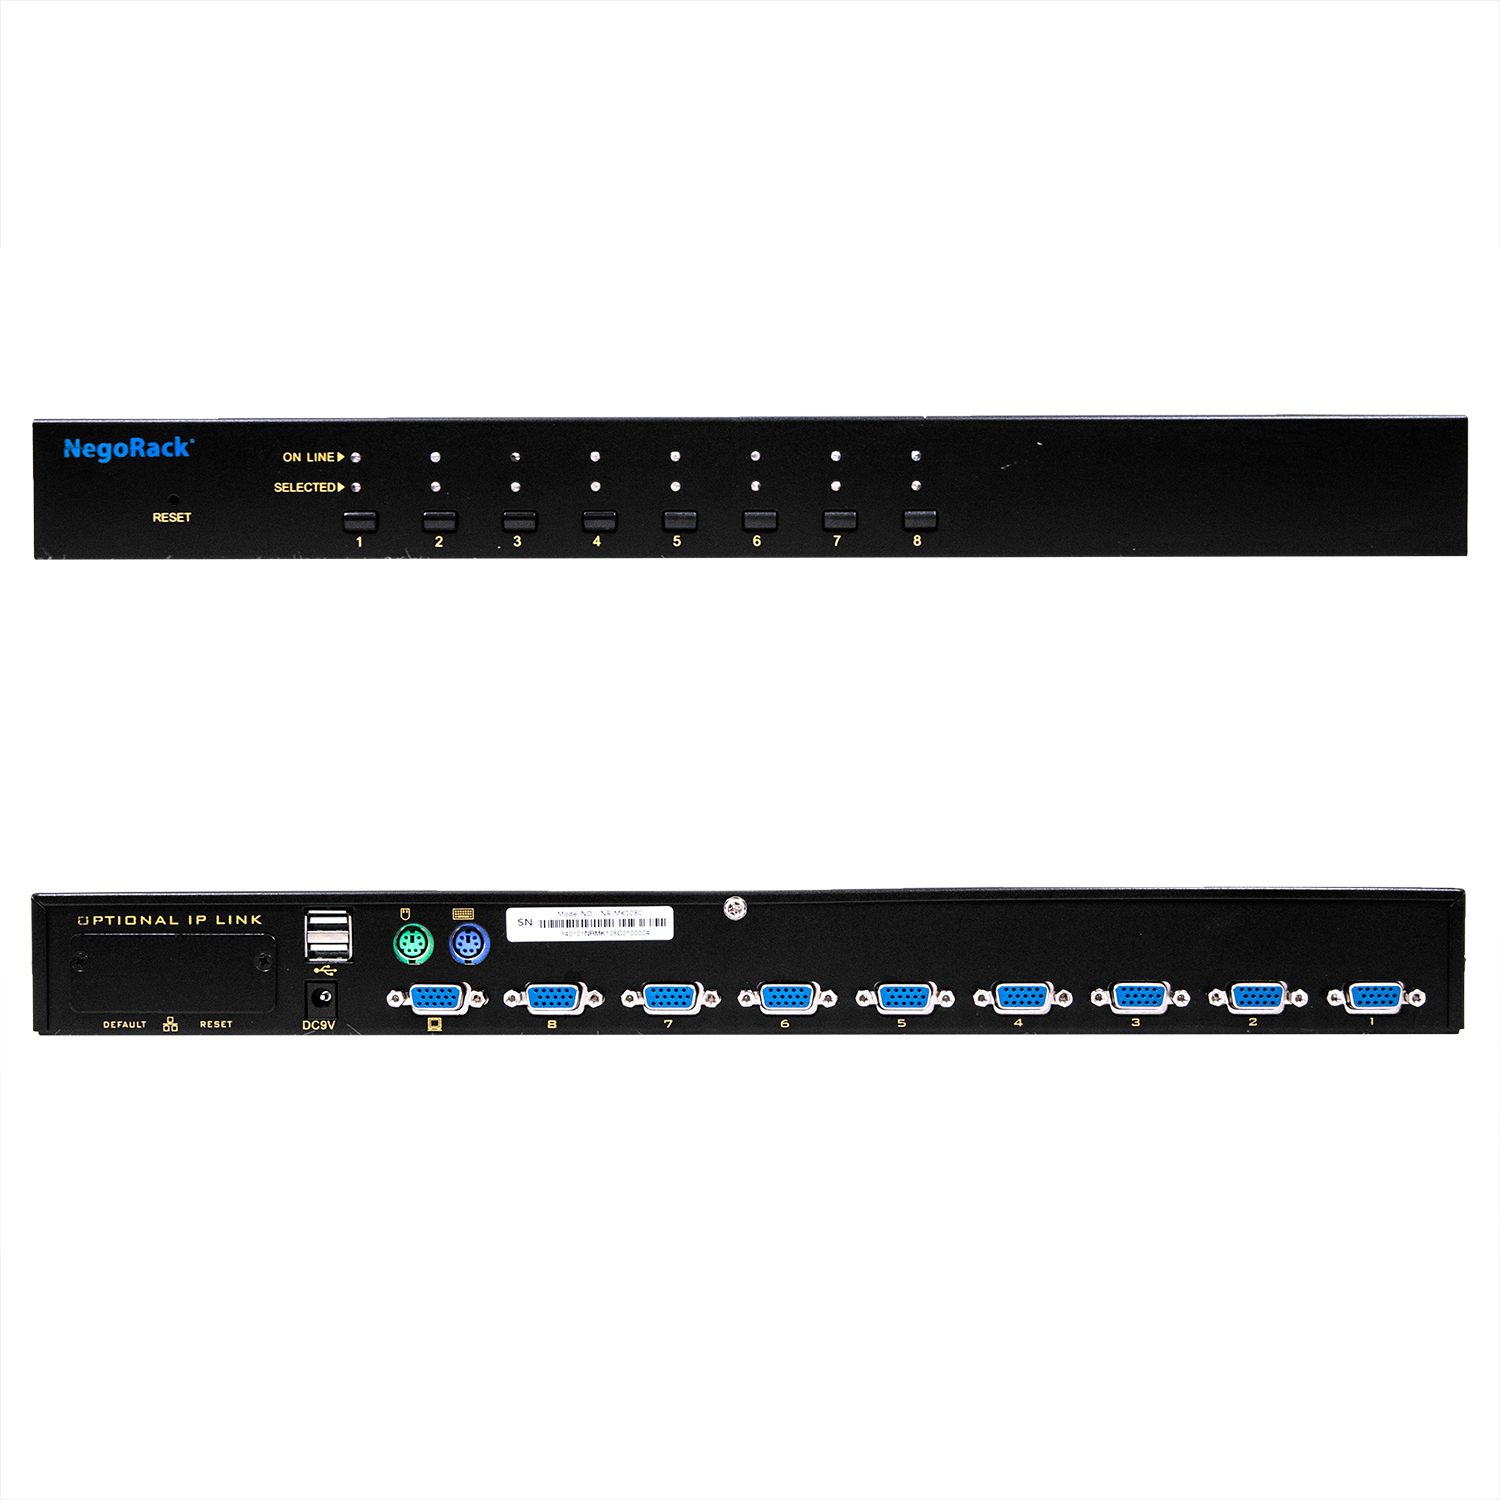 Переключатель KVM NR-MK108C  rev2, 19" rackmount, 1U, PS/2&USB, 8 портов, слот для IP модуля, Negorack